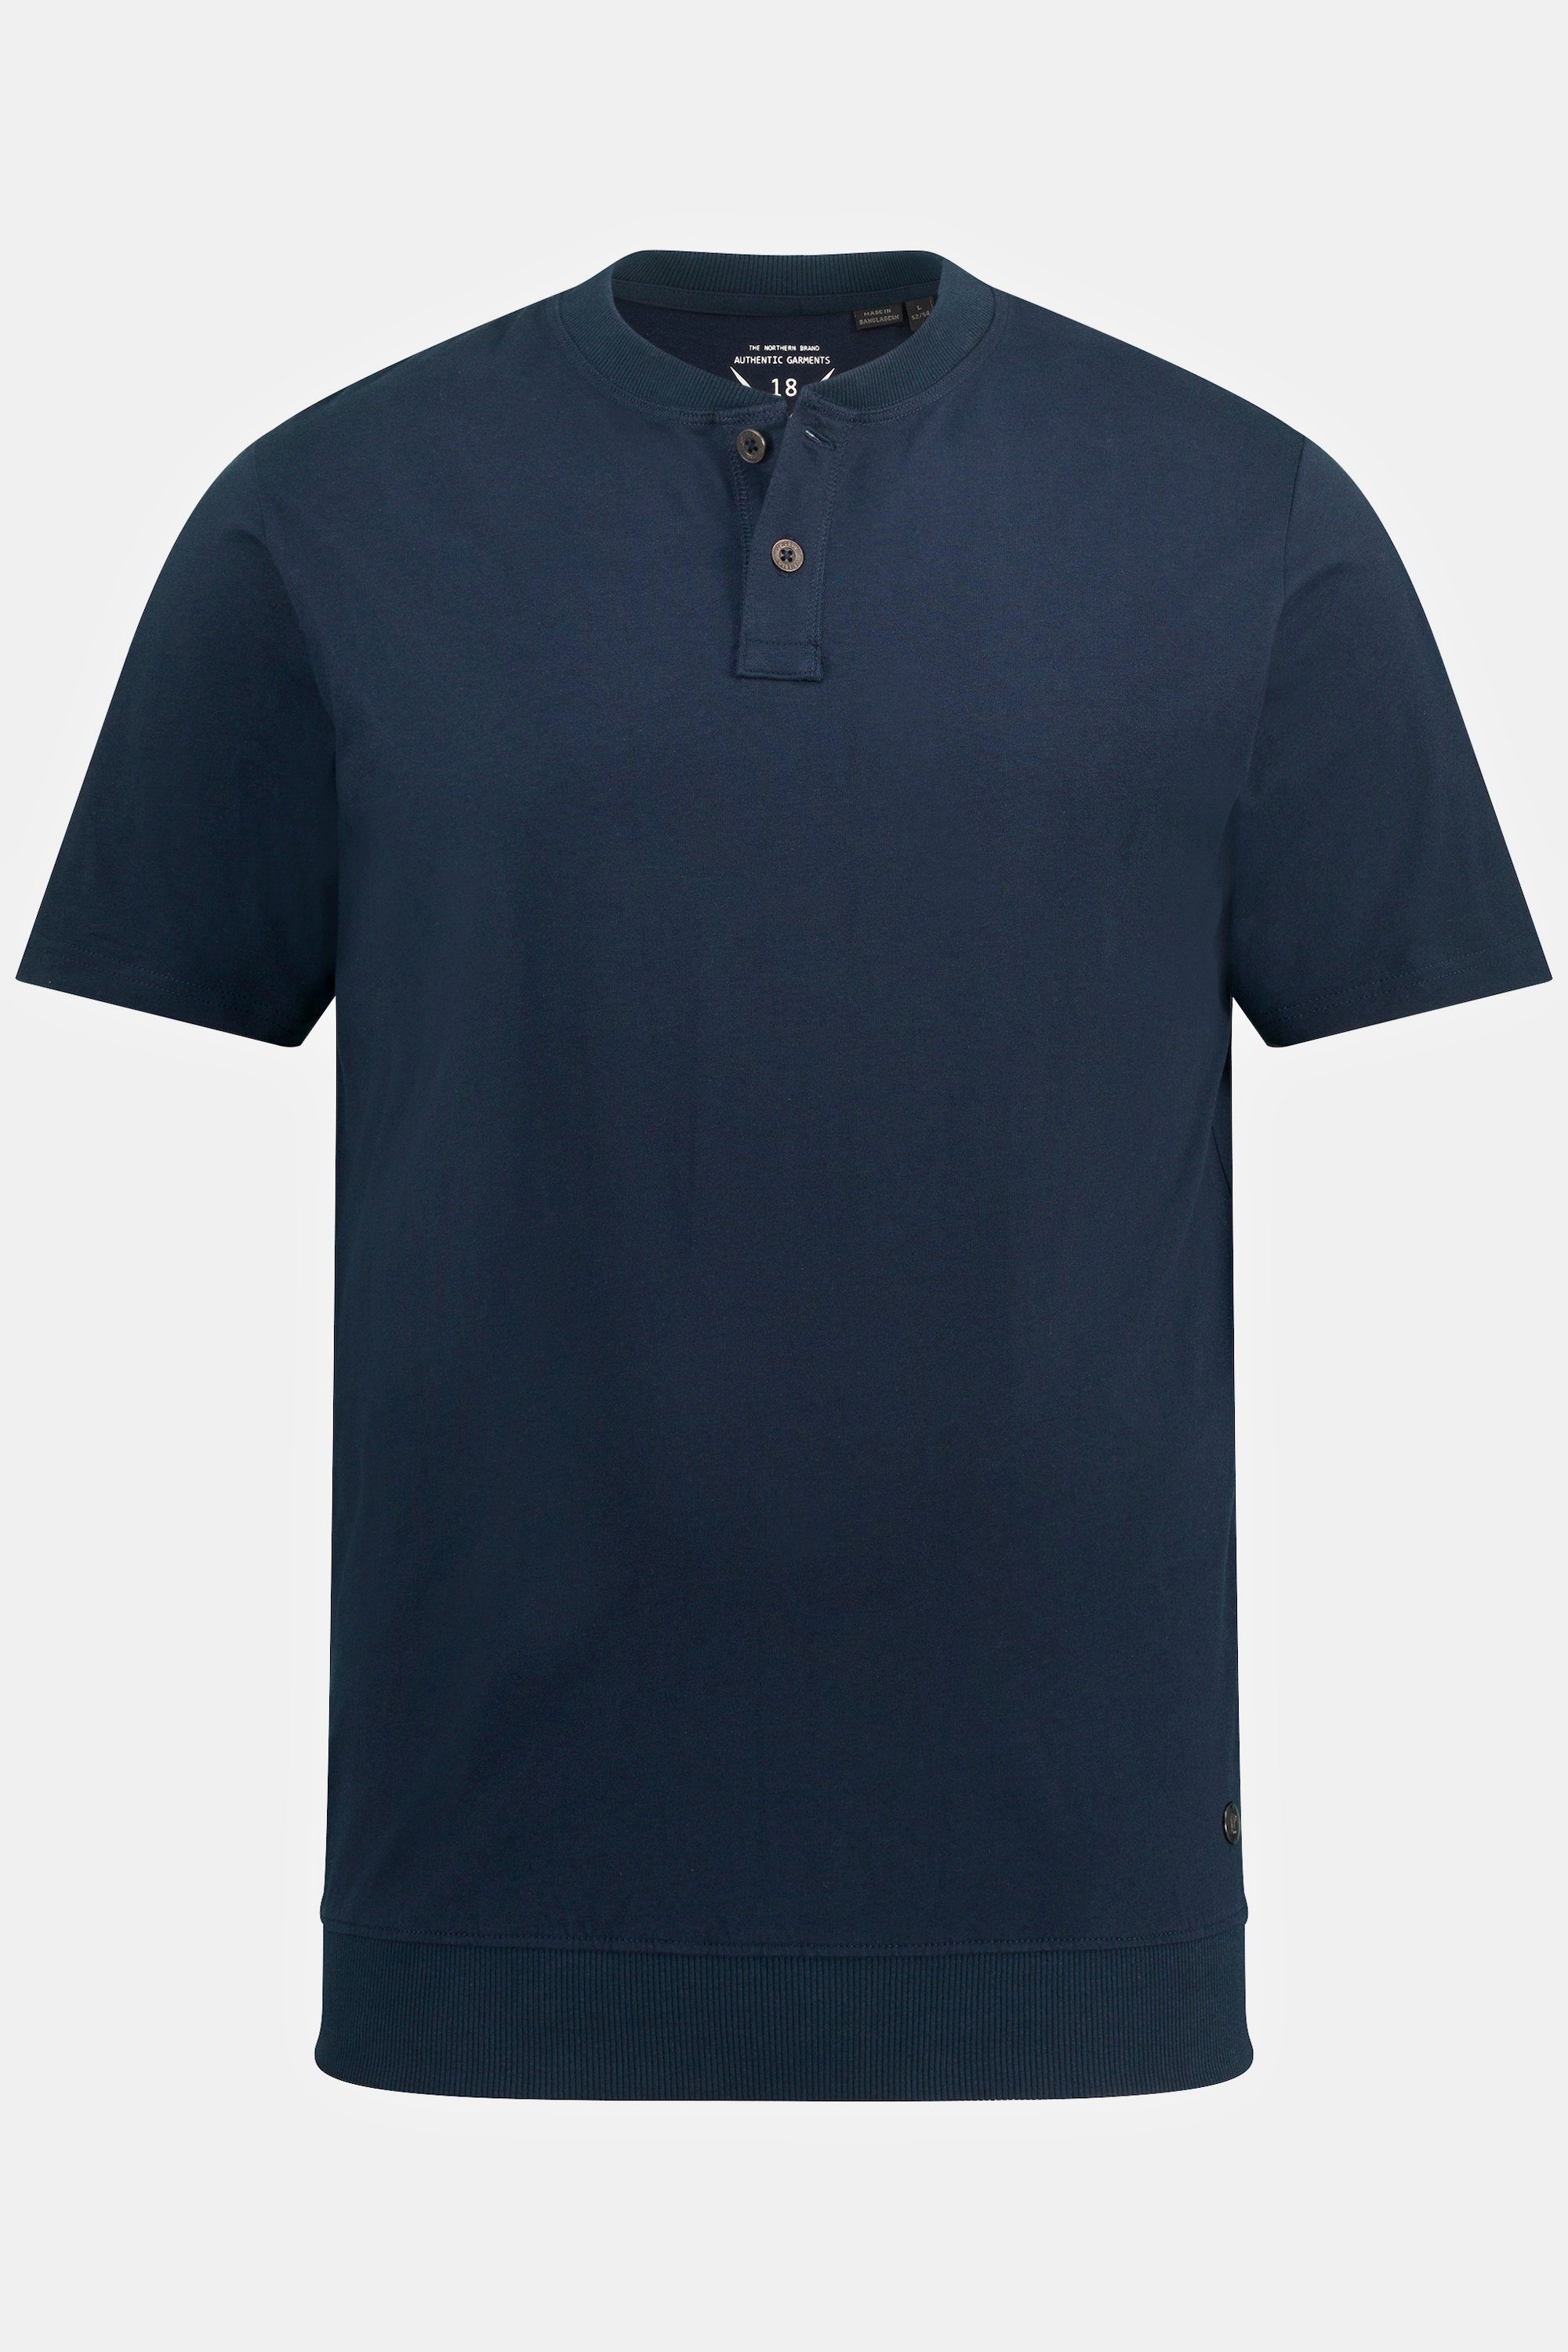 Rundhals 8 bis Halbarm XL navy JP1880 blau T-Shirt Bauchfit Henley